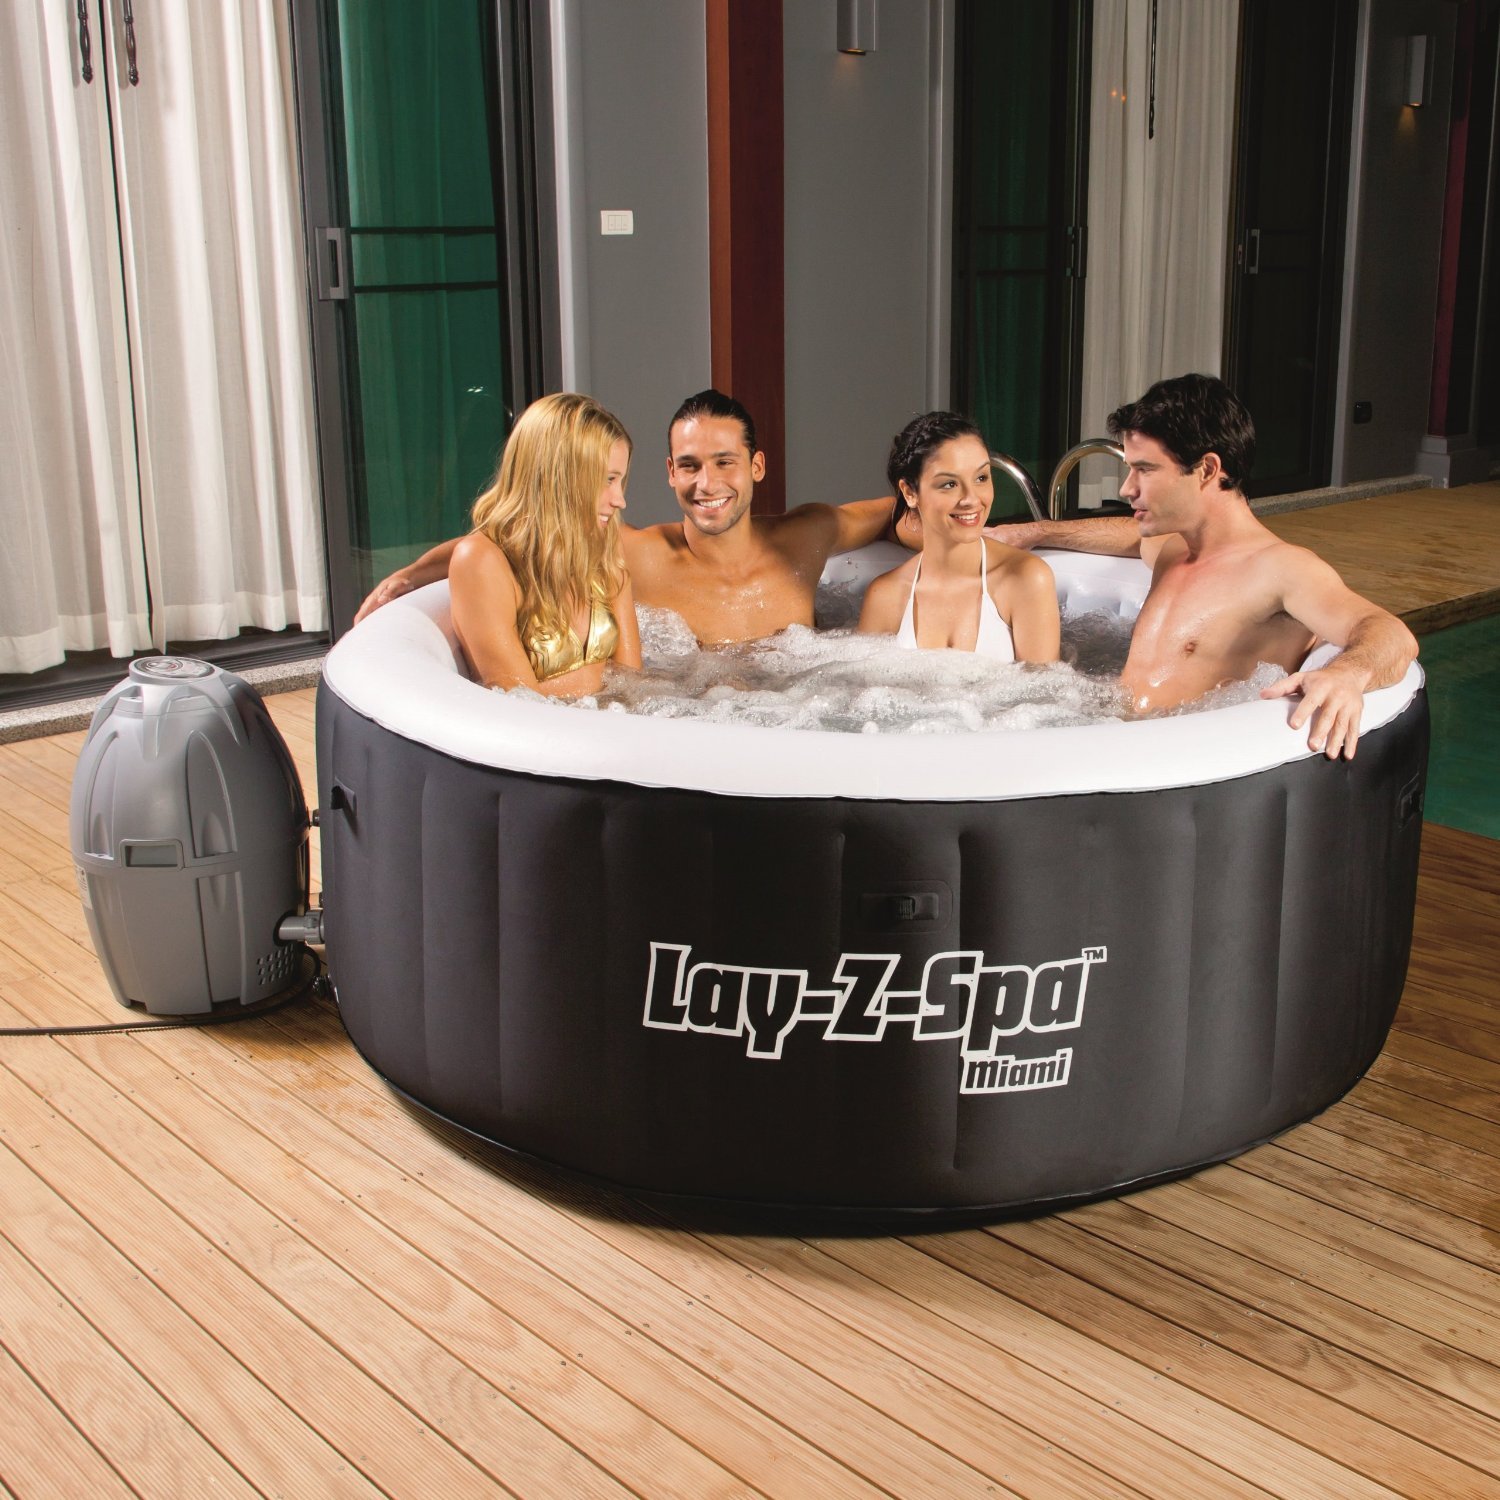 Sparkplug reccomend foursome hot tub